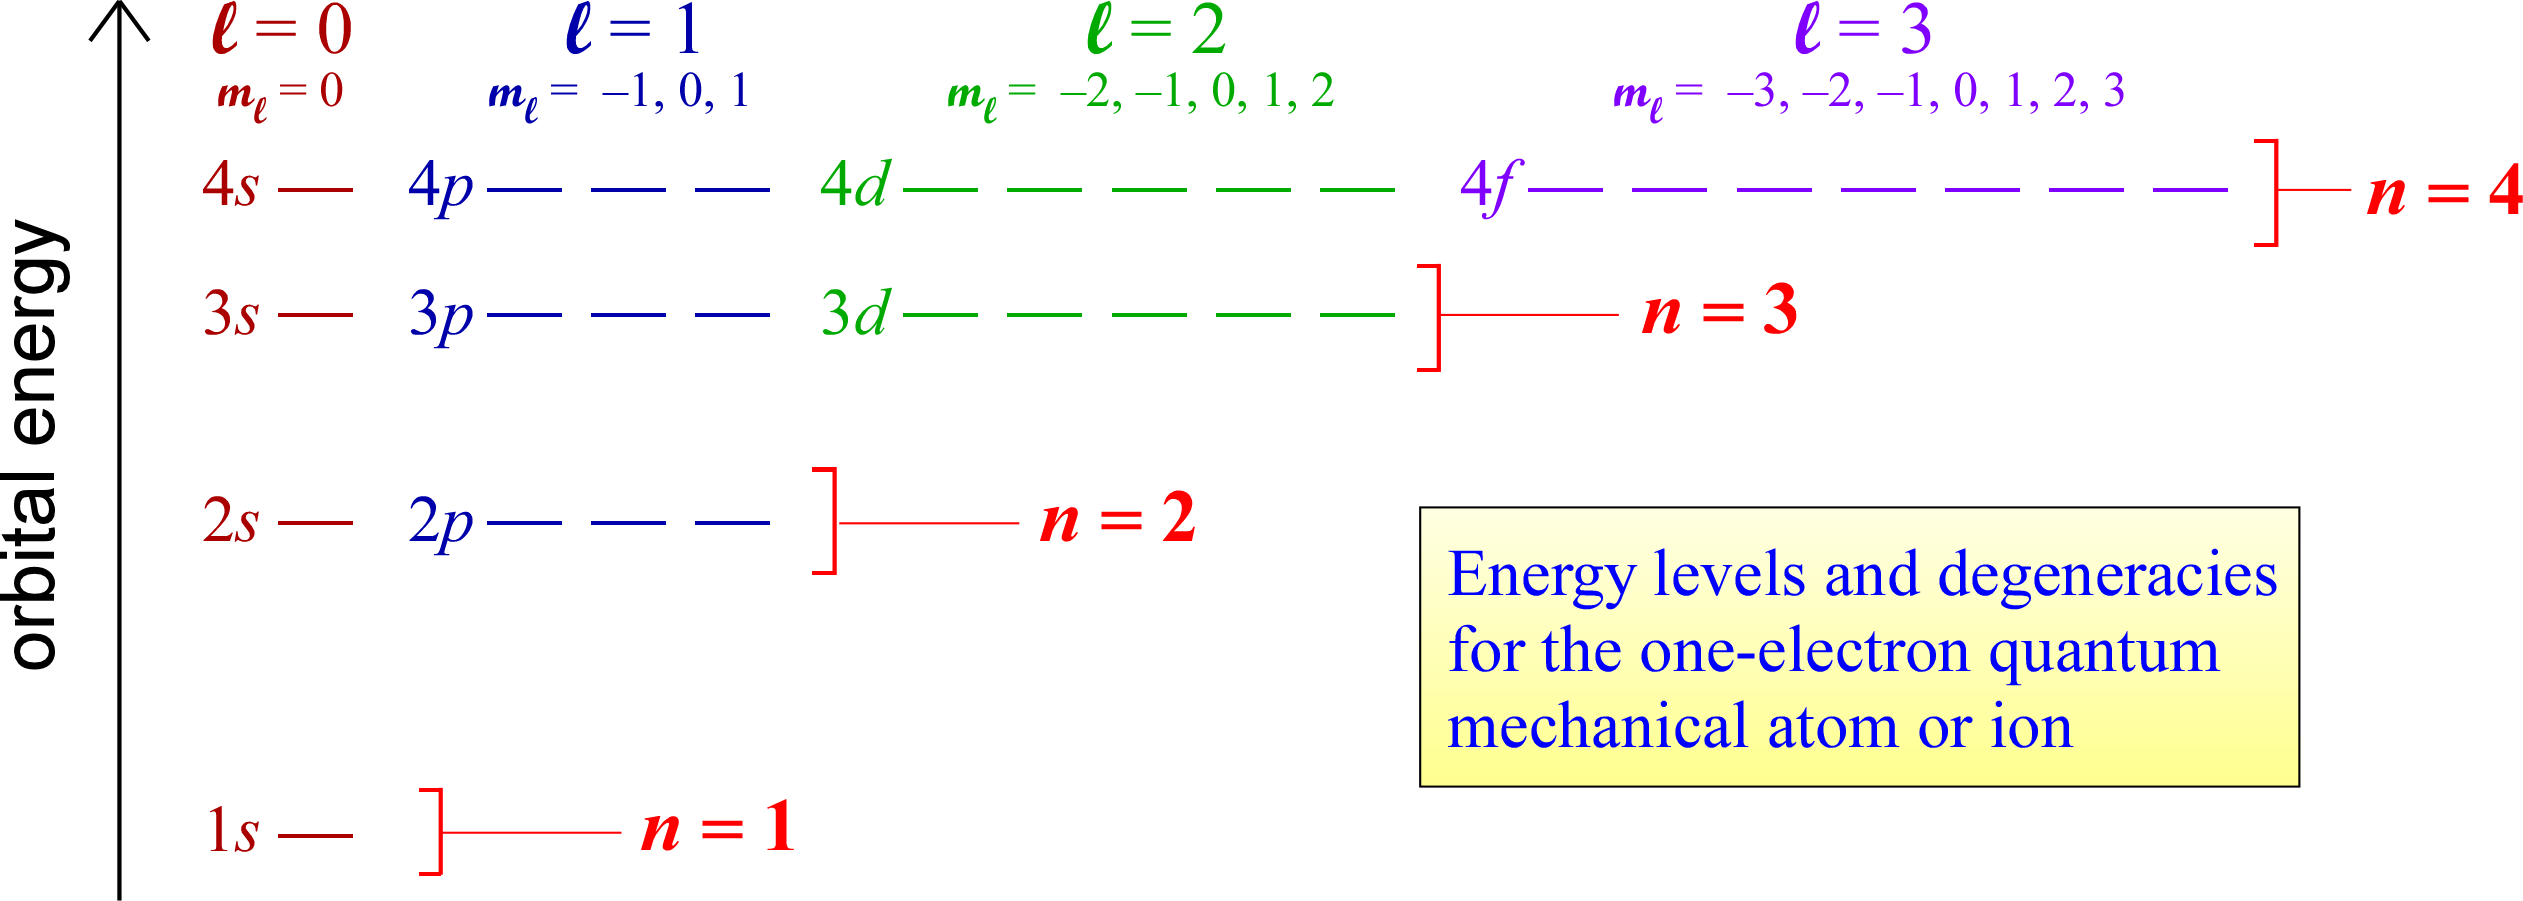 Orbital energy diagram for the hydrogen atom